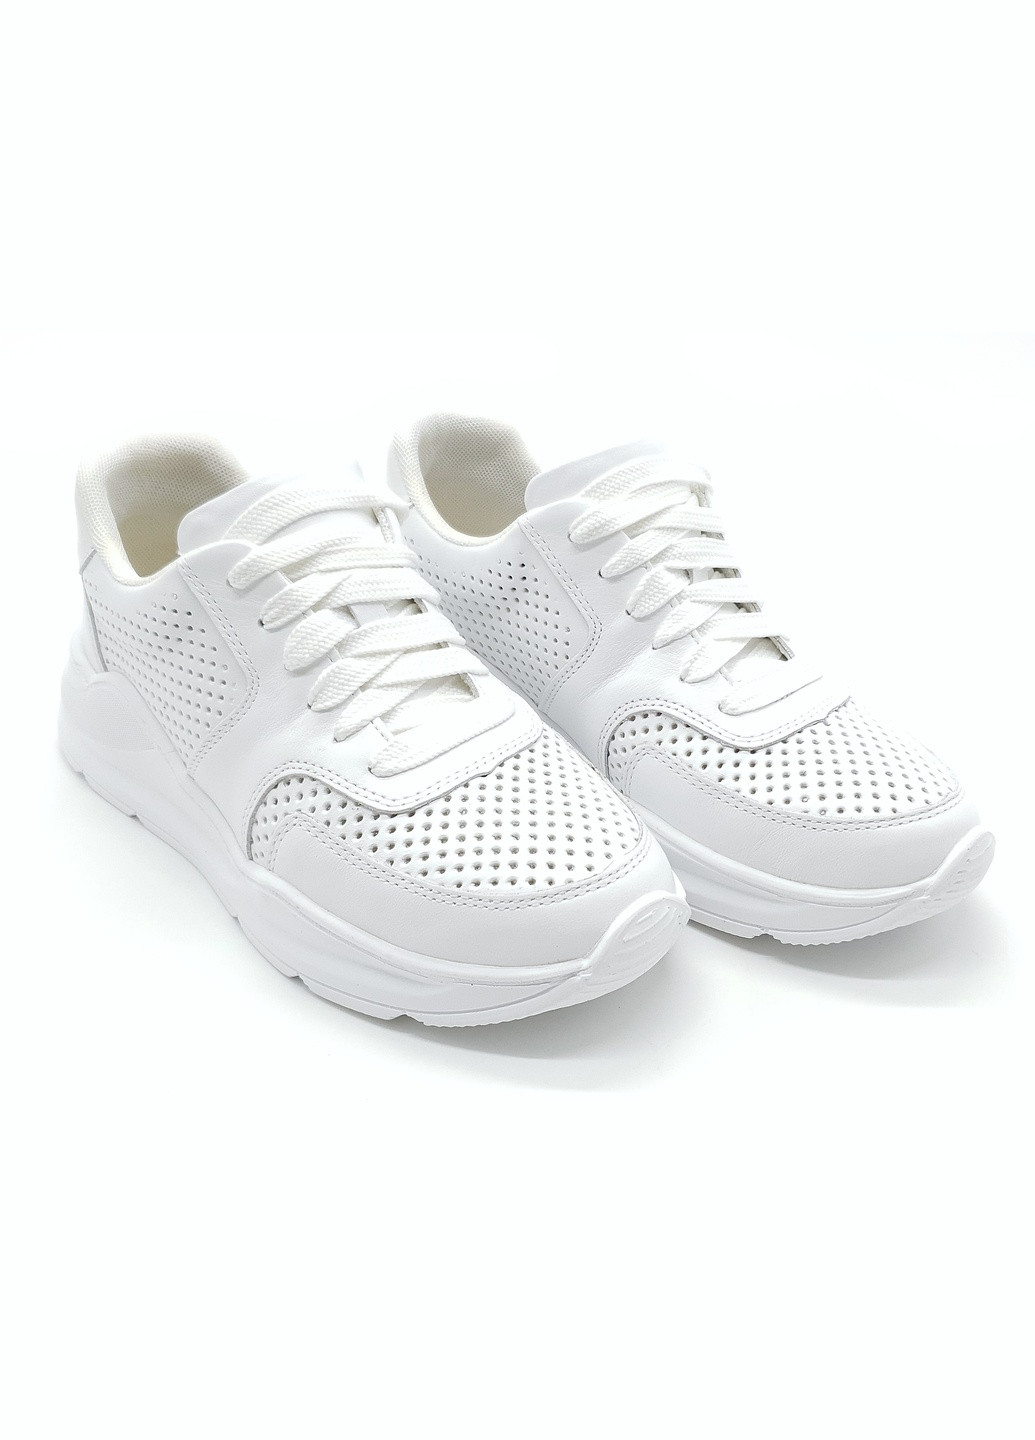 Білі всесезонні жіночі кросівки білі шкіряні k-19-1 235 мм (р) Kento